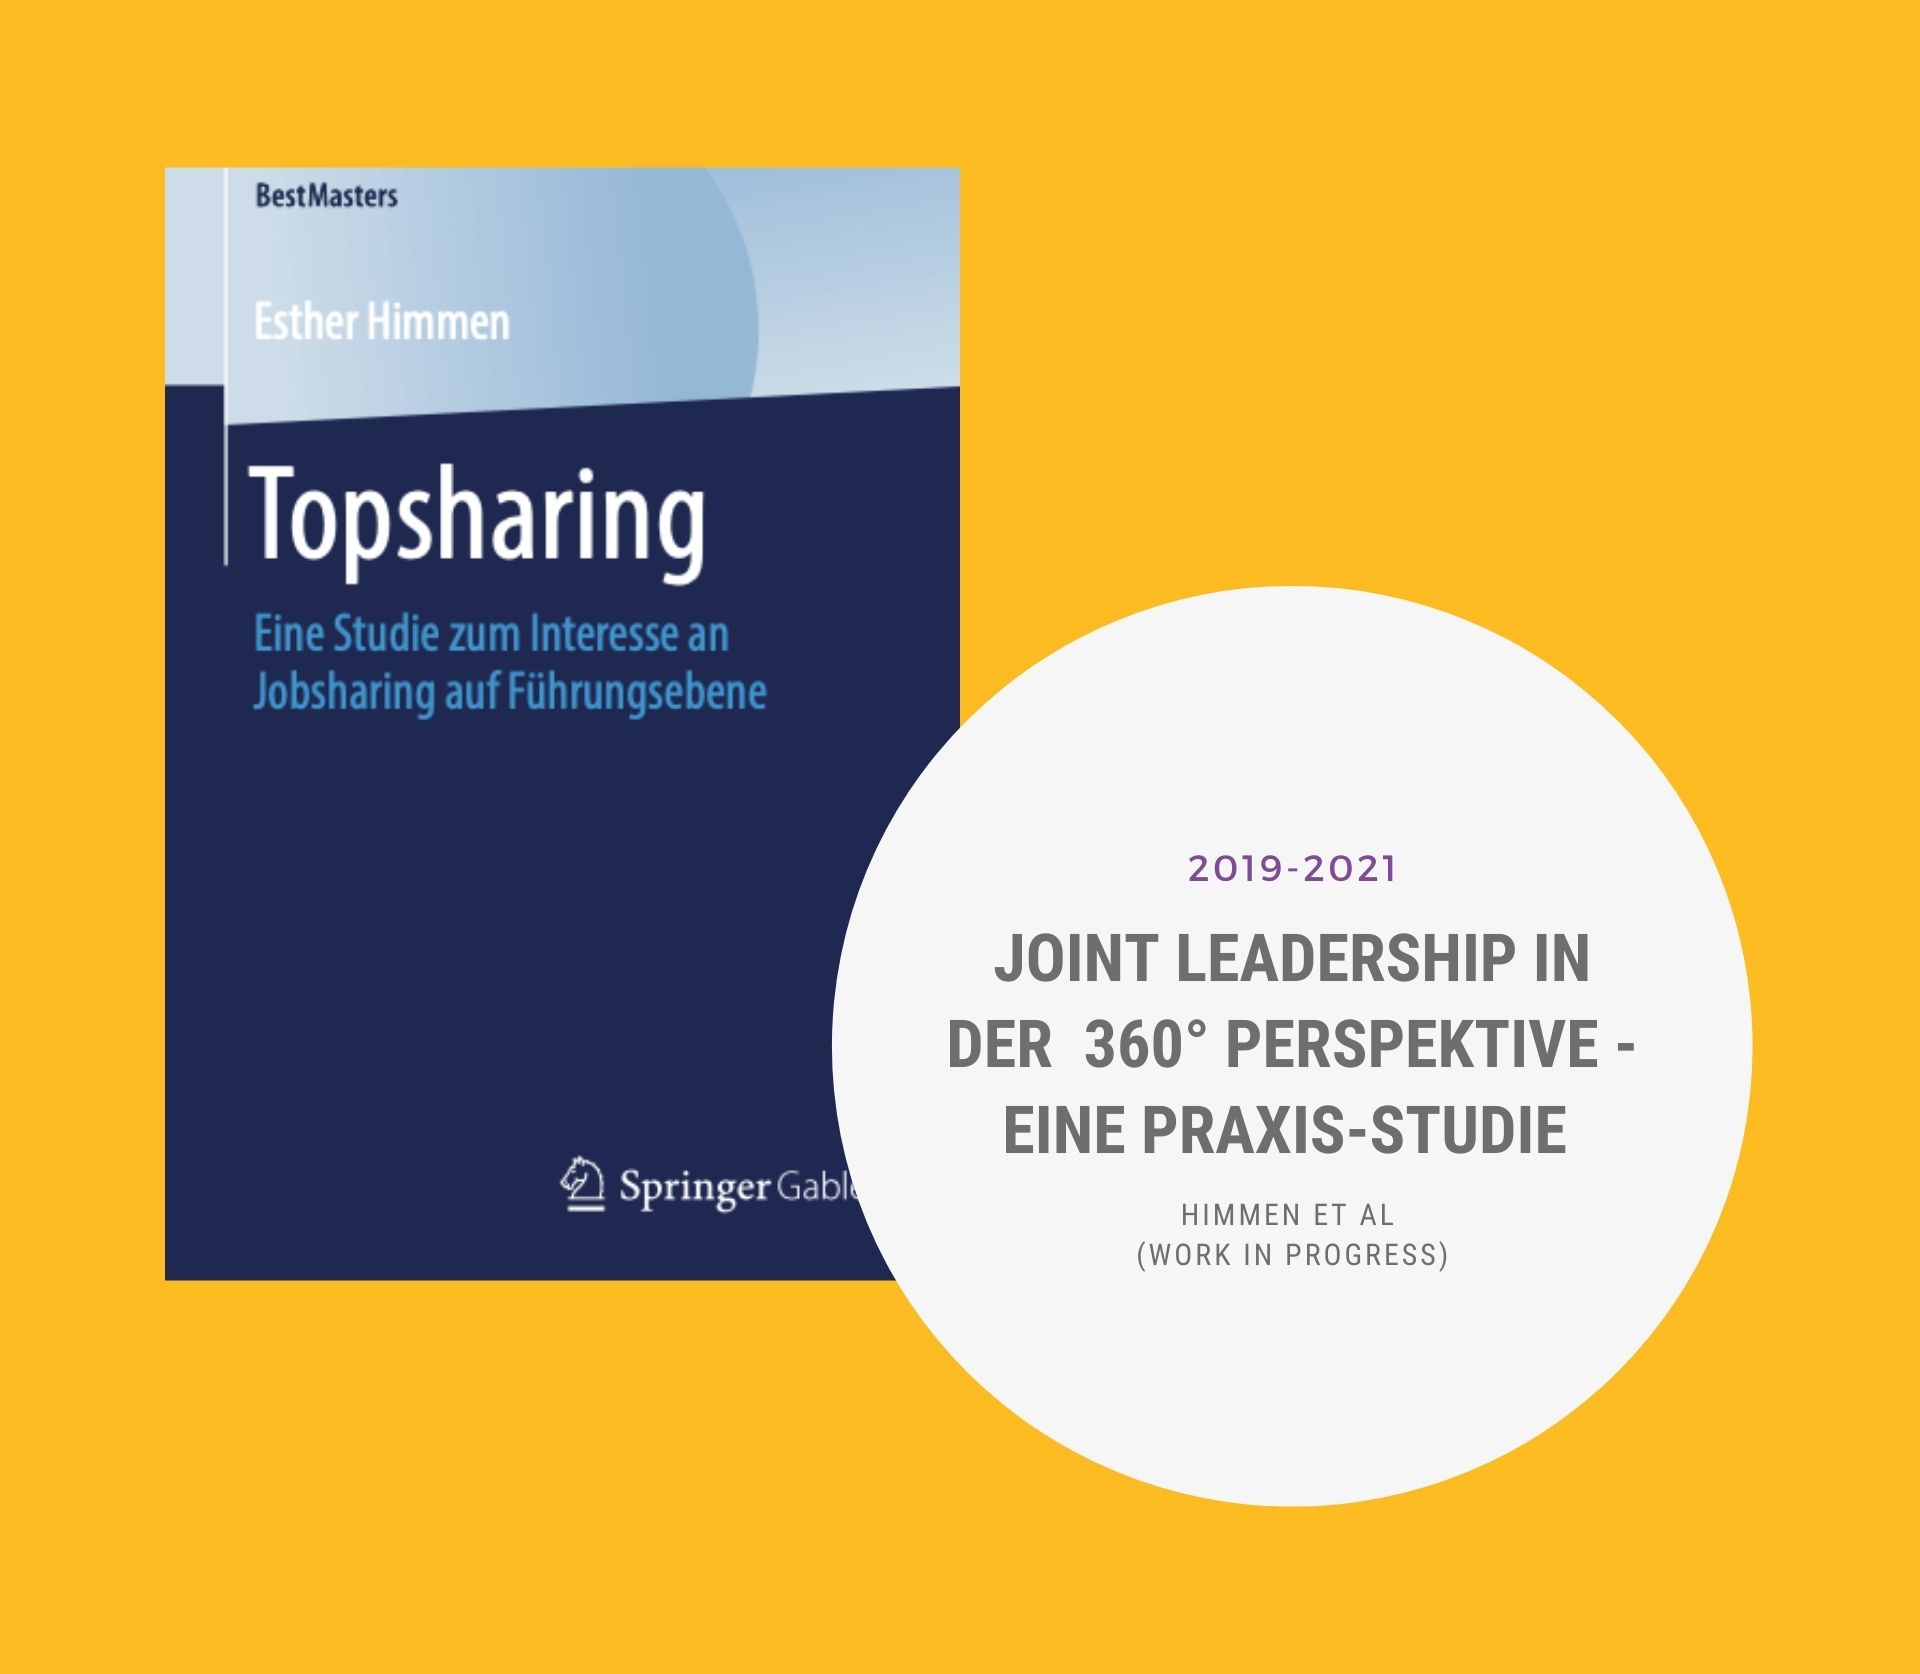 Joint Leadership und JobSharing Forschung und Studien von Esther Himmen et al_JOYntLEADING